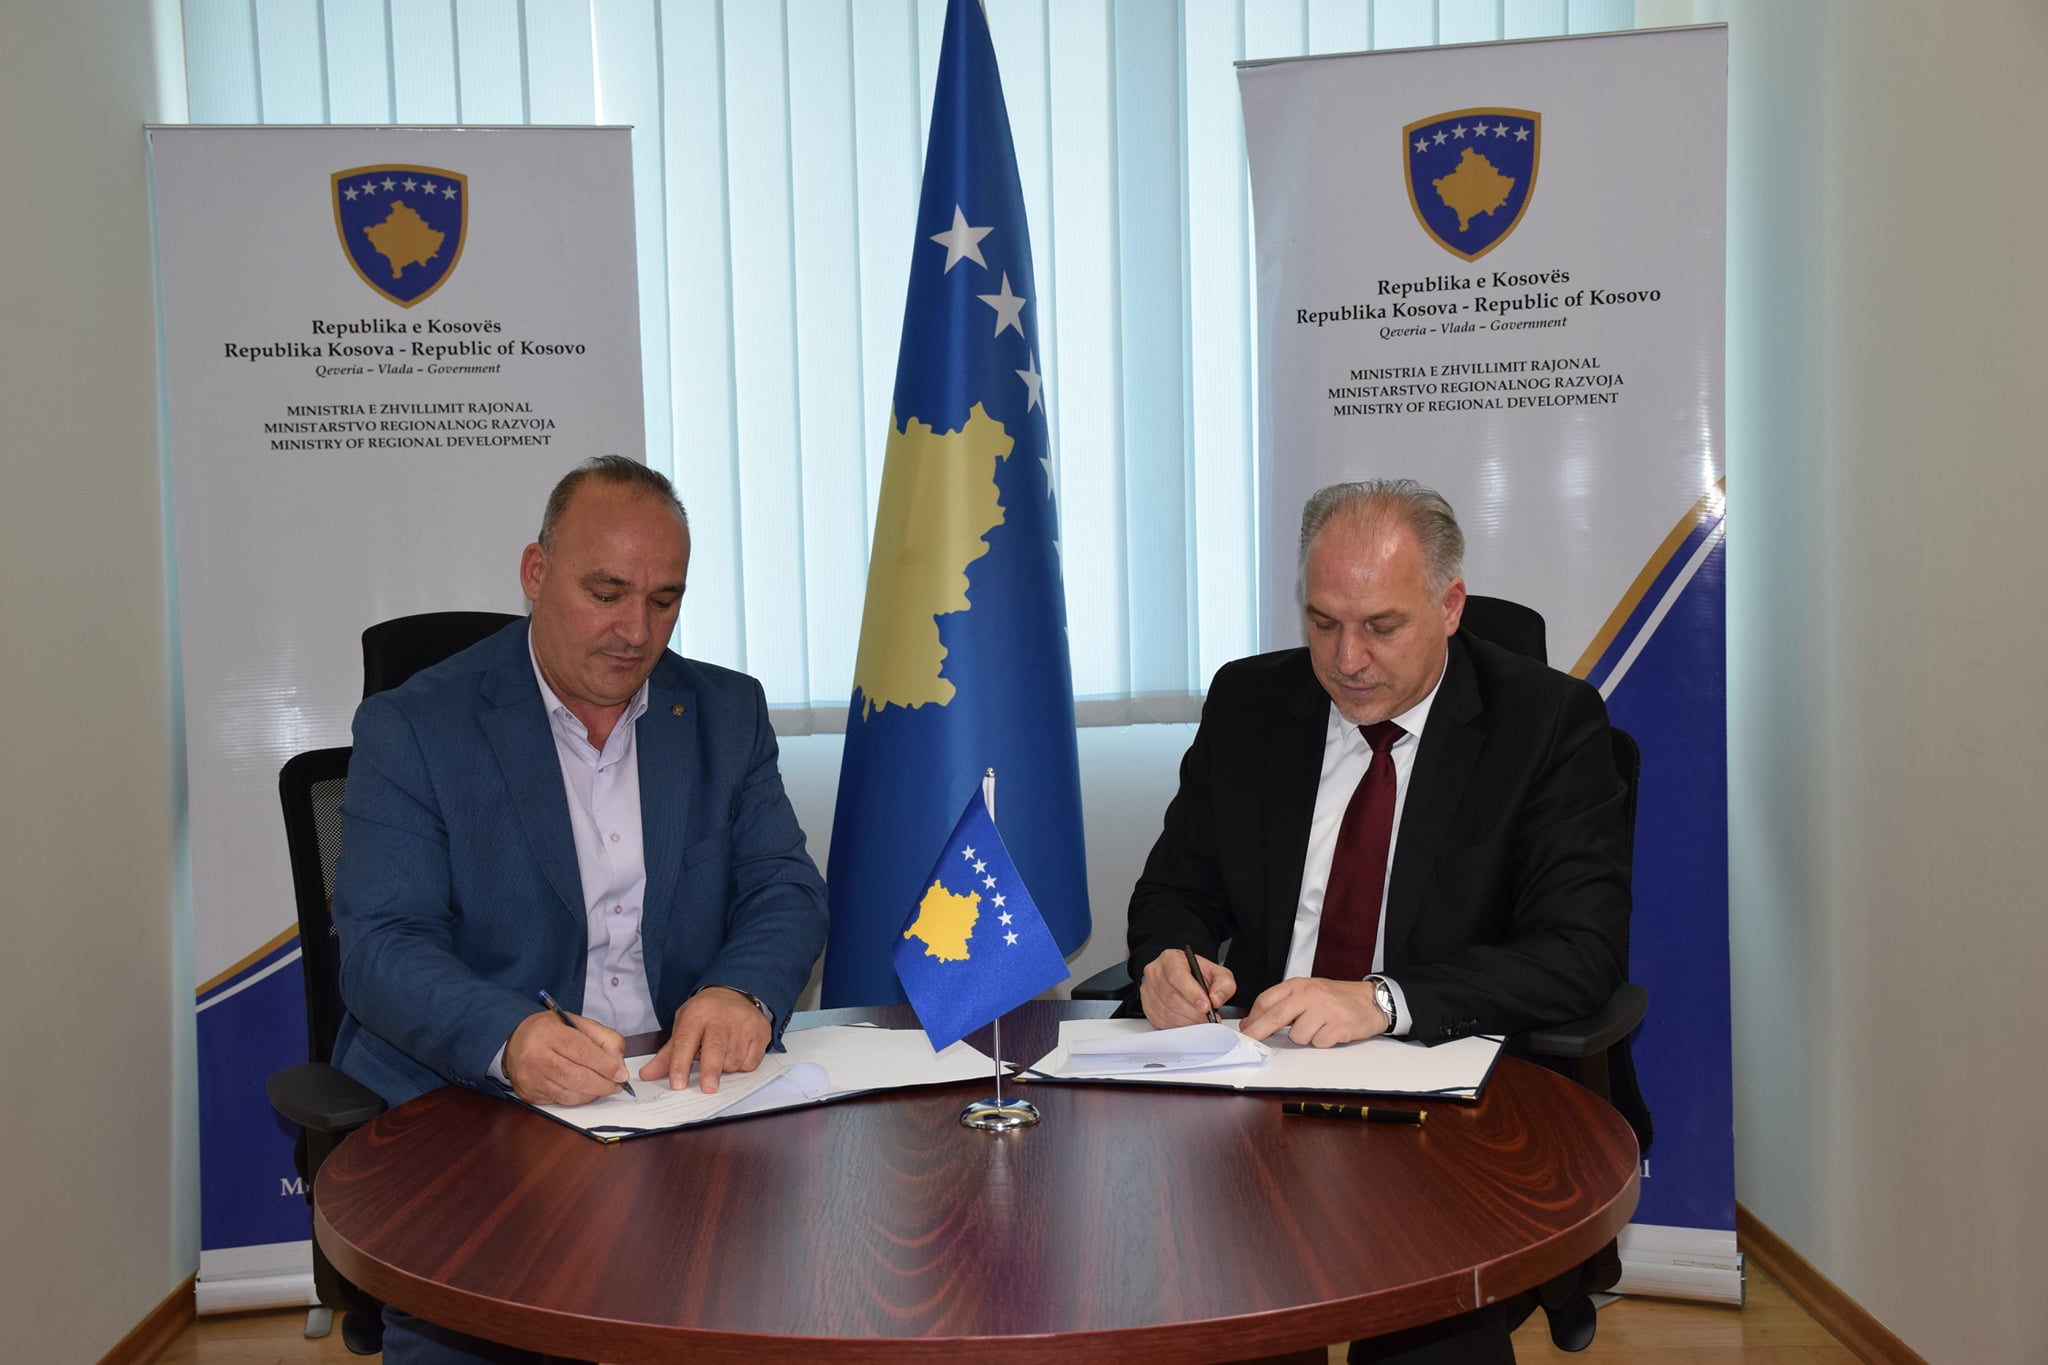 Ministria e Zhvillimit Rajonal nënshkruan Marrëveshjen e Mirëkuptimit me komunën përfituese të Podujevës në kuadër të Programit për Zhvillim Rajonal PZHR 2022